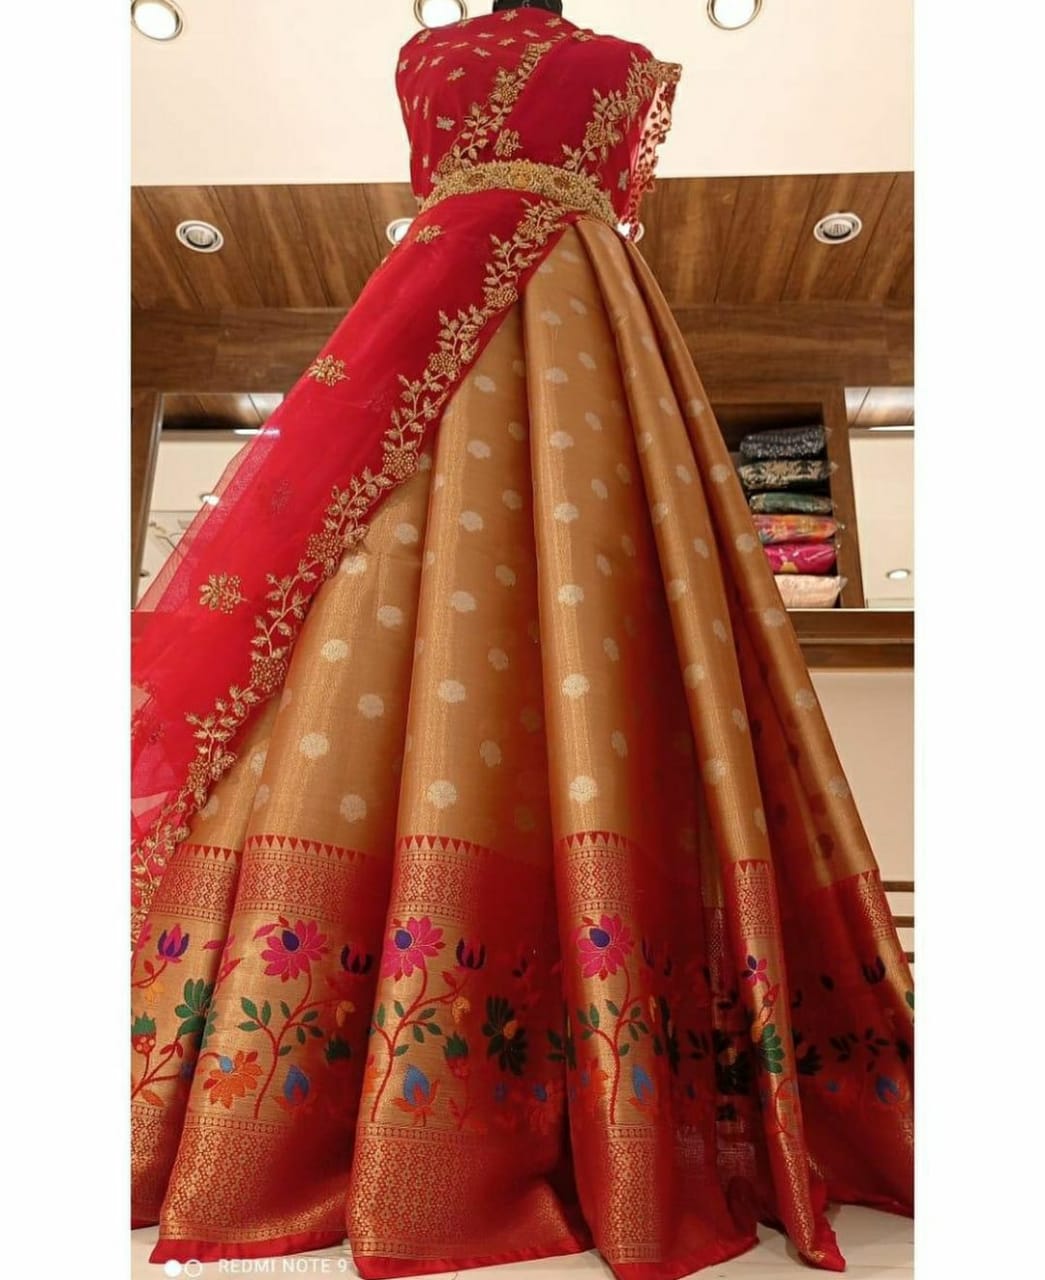 Convert Saree Into One-Piece Dress||DIY Saree Gown |Paithani Saree dress😍❤️✨  - YouTube